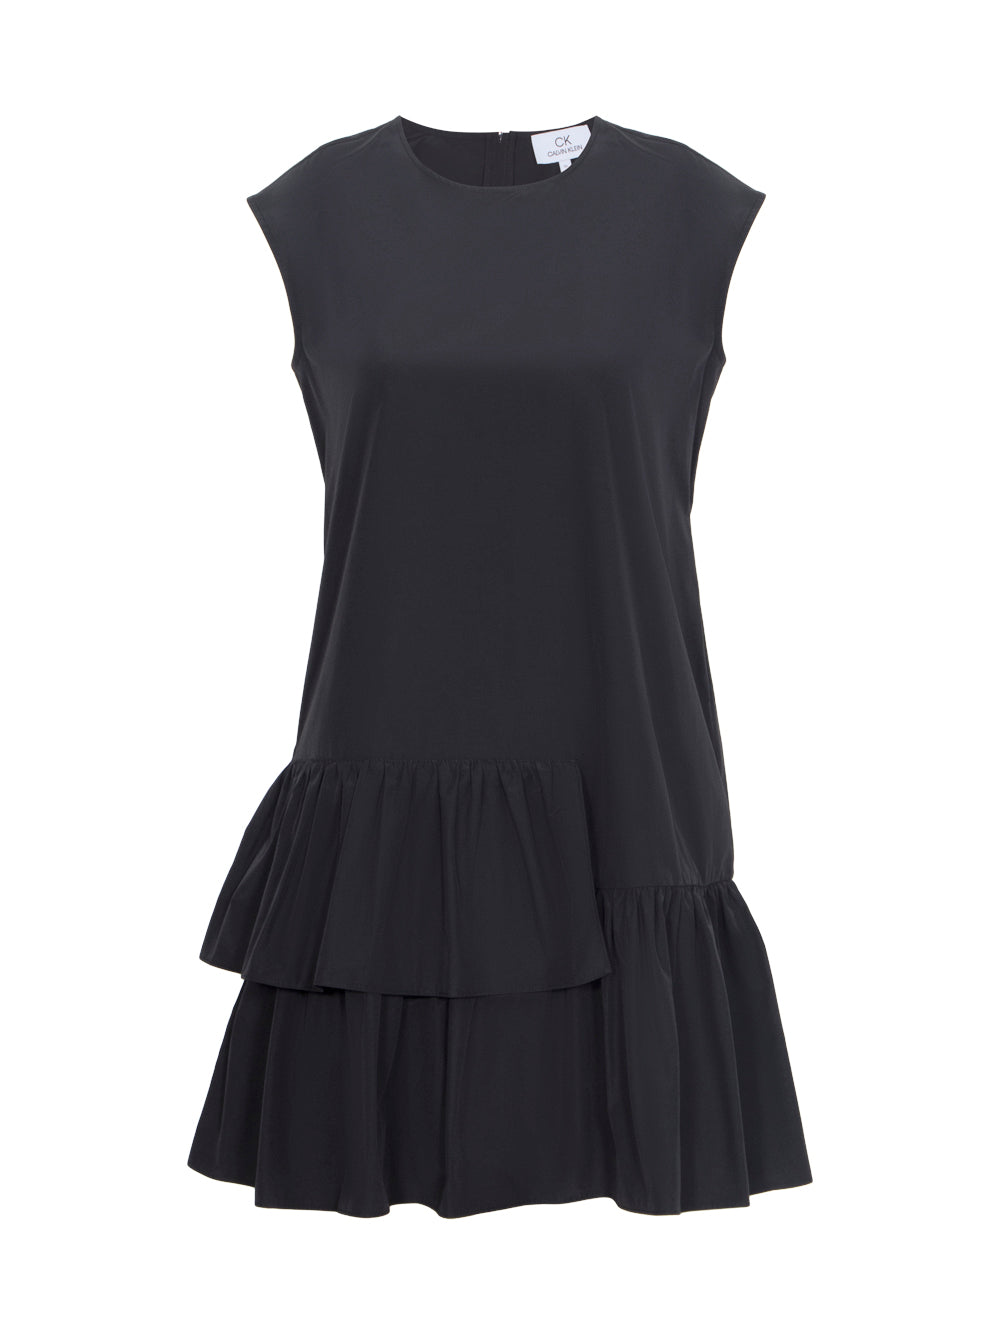 Sheen Cotton Ruffled Dress (Black)